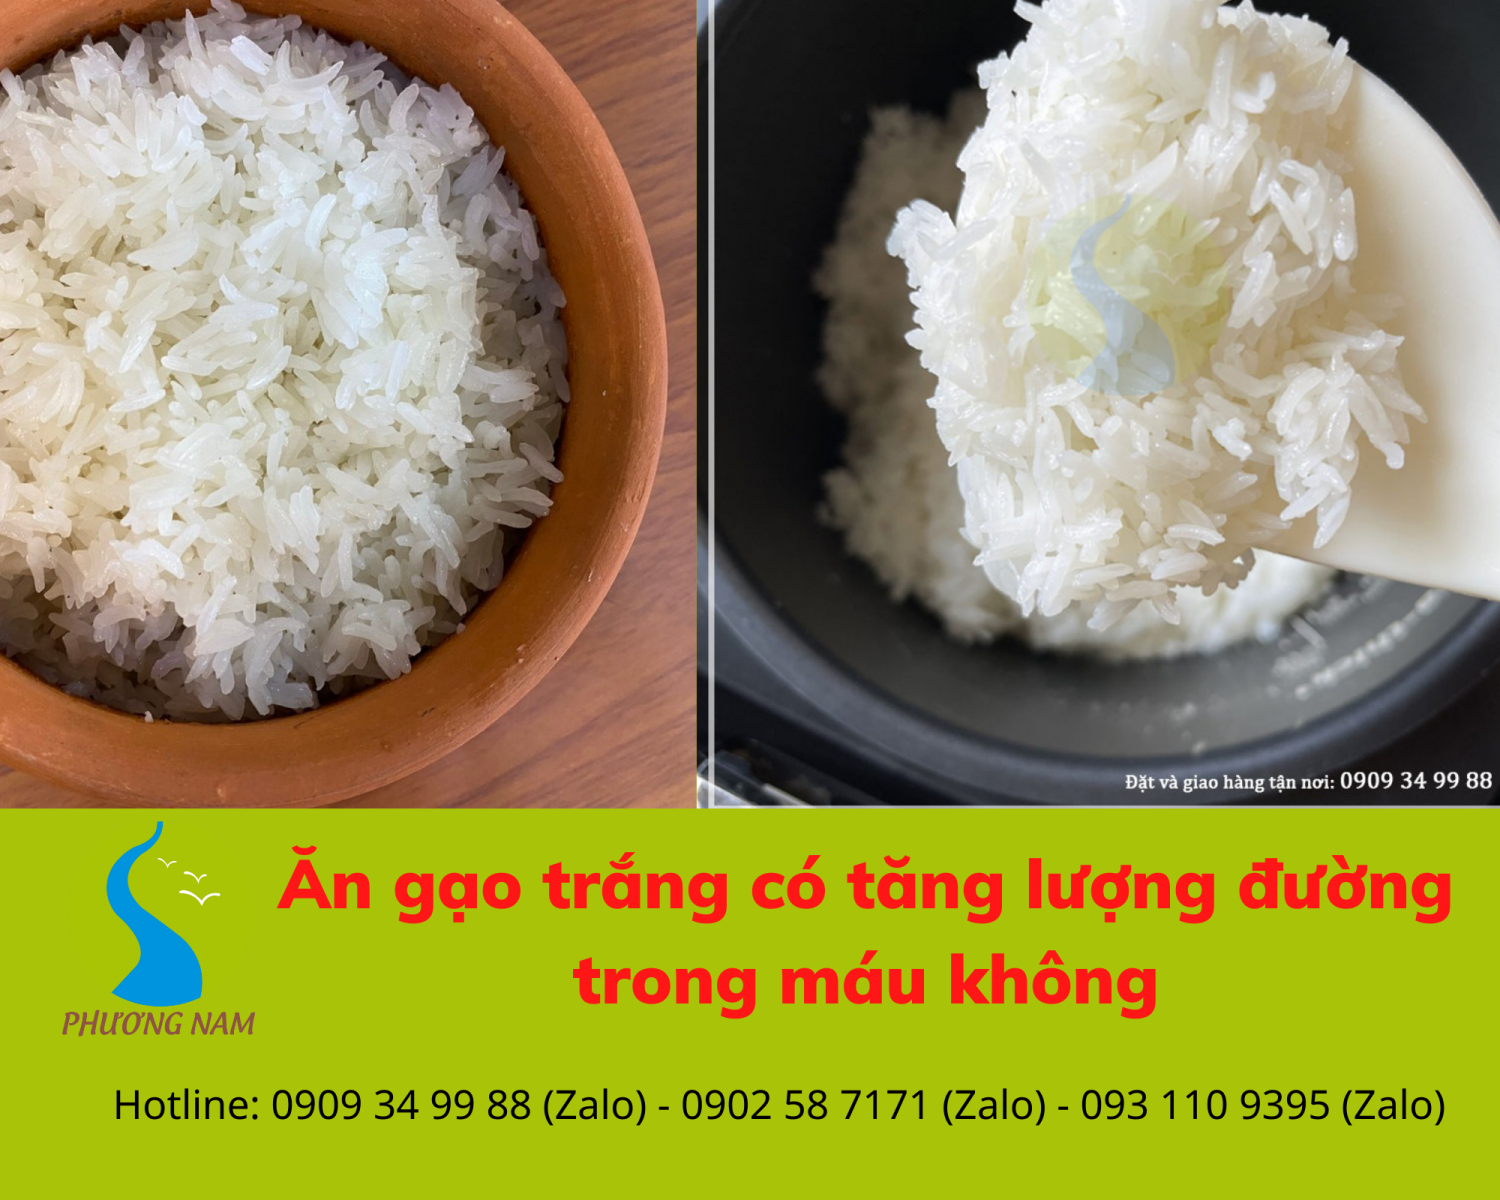 cơm trắng có làm tăng lượng đường trong máu - gaophuongnam.vn